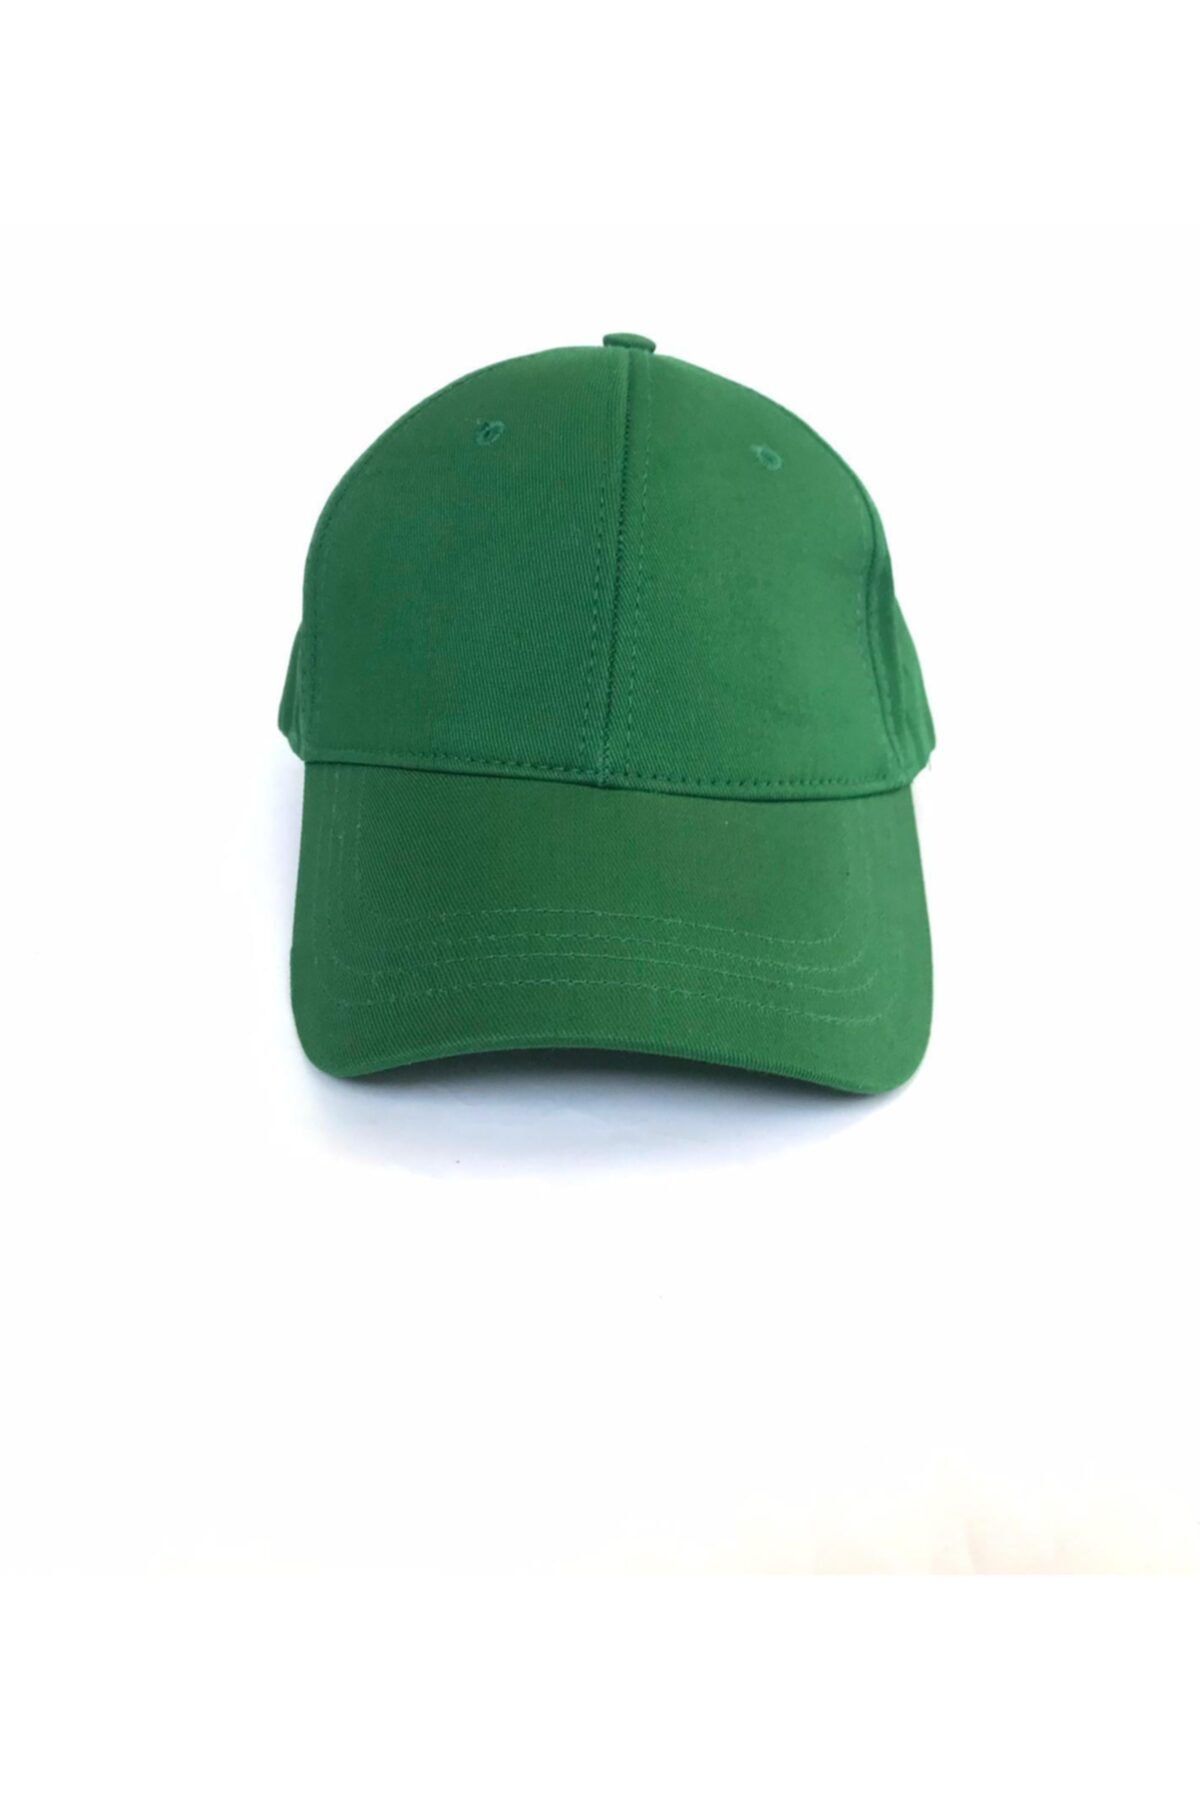 salarticaret Unisex Koyu Yeşil Spor Arkası Cırtlı Ayarlanabilir Şapka 55-60 Cm